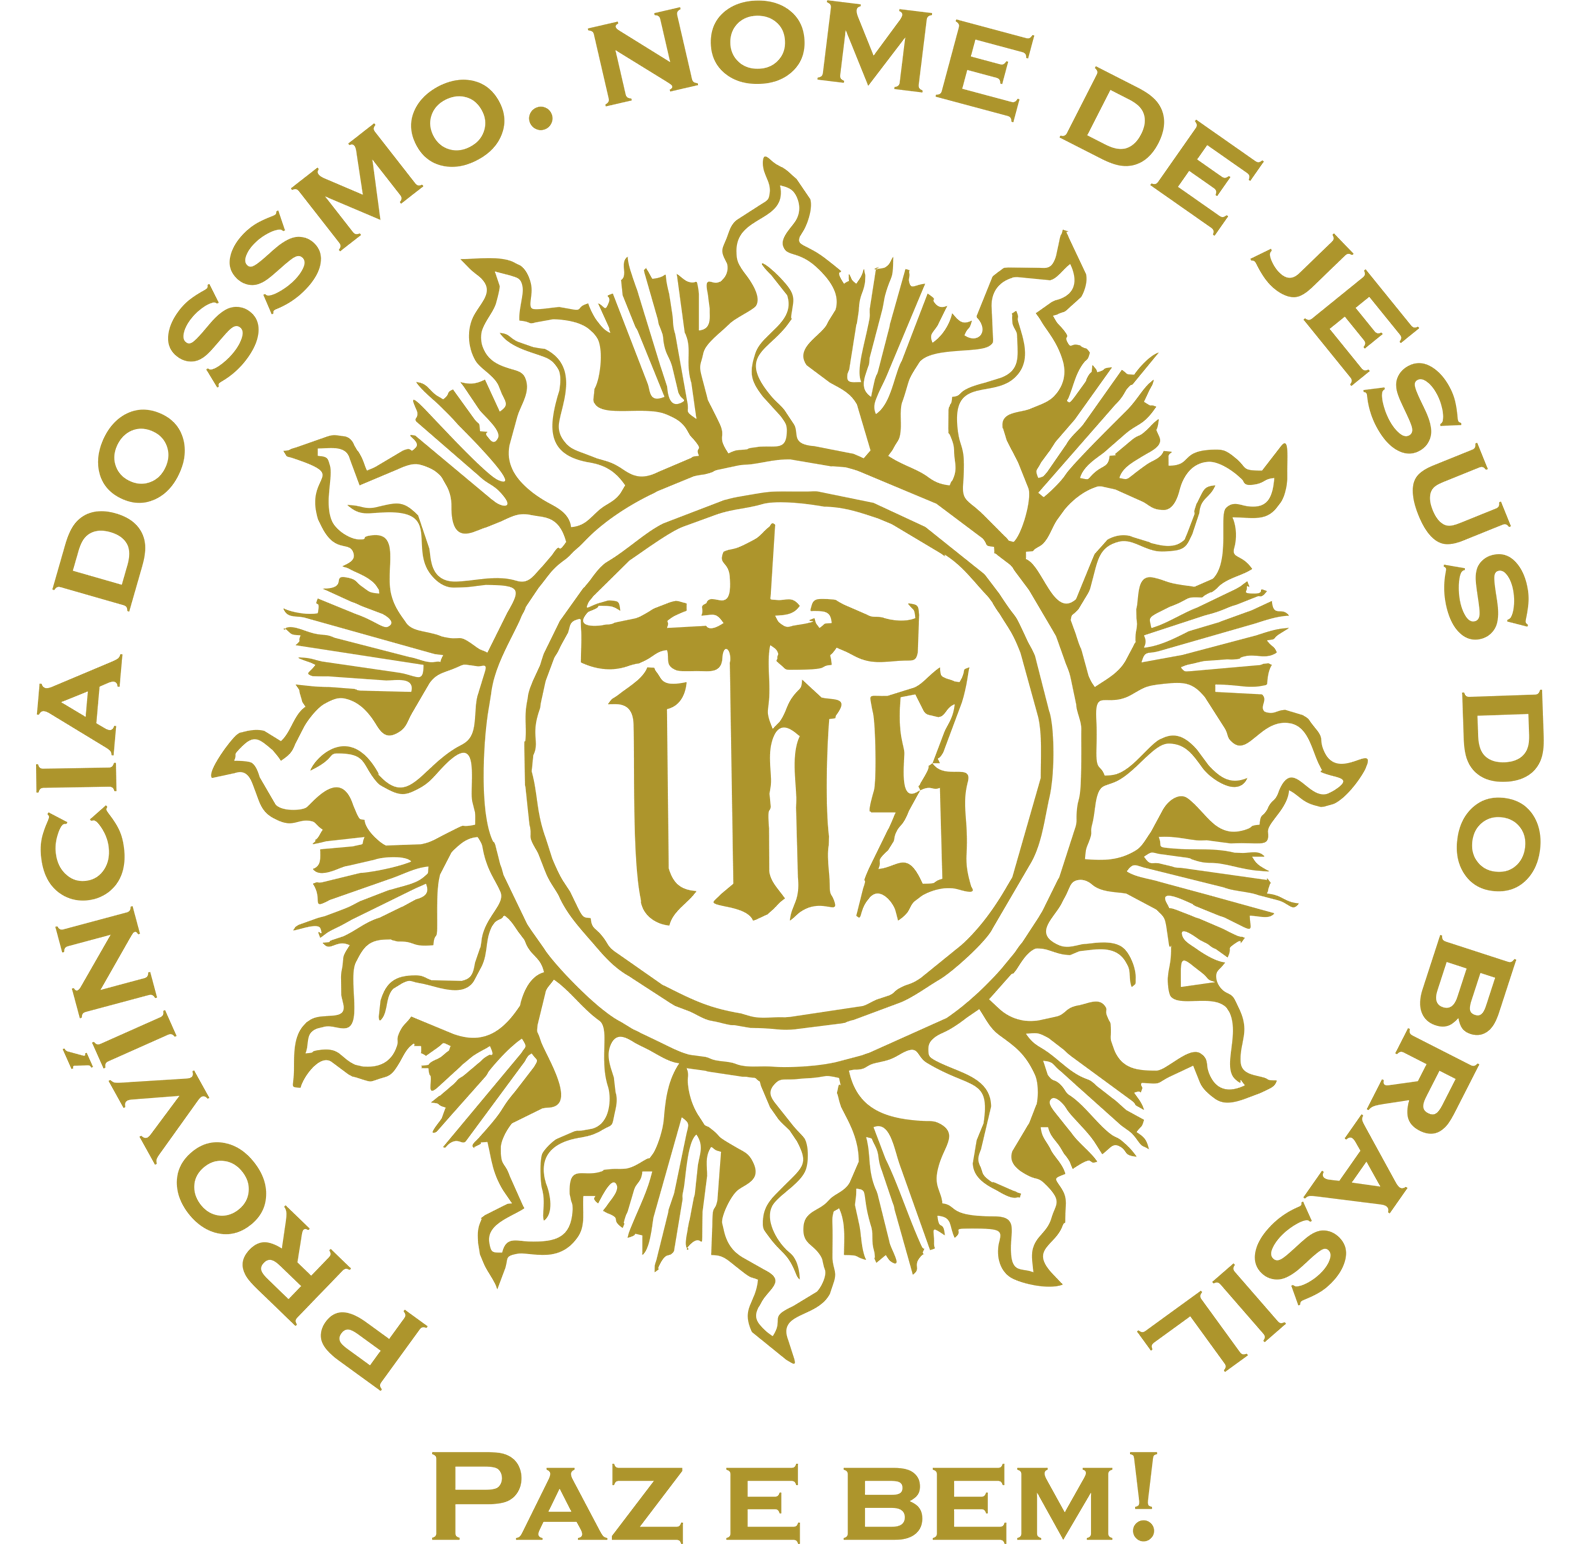 Logomarca (2)